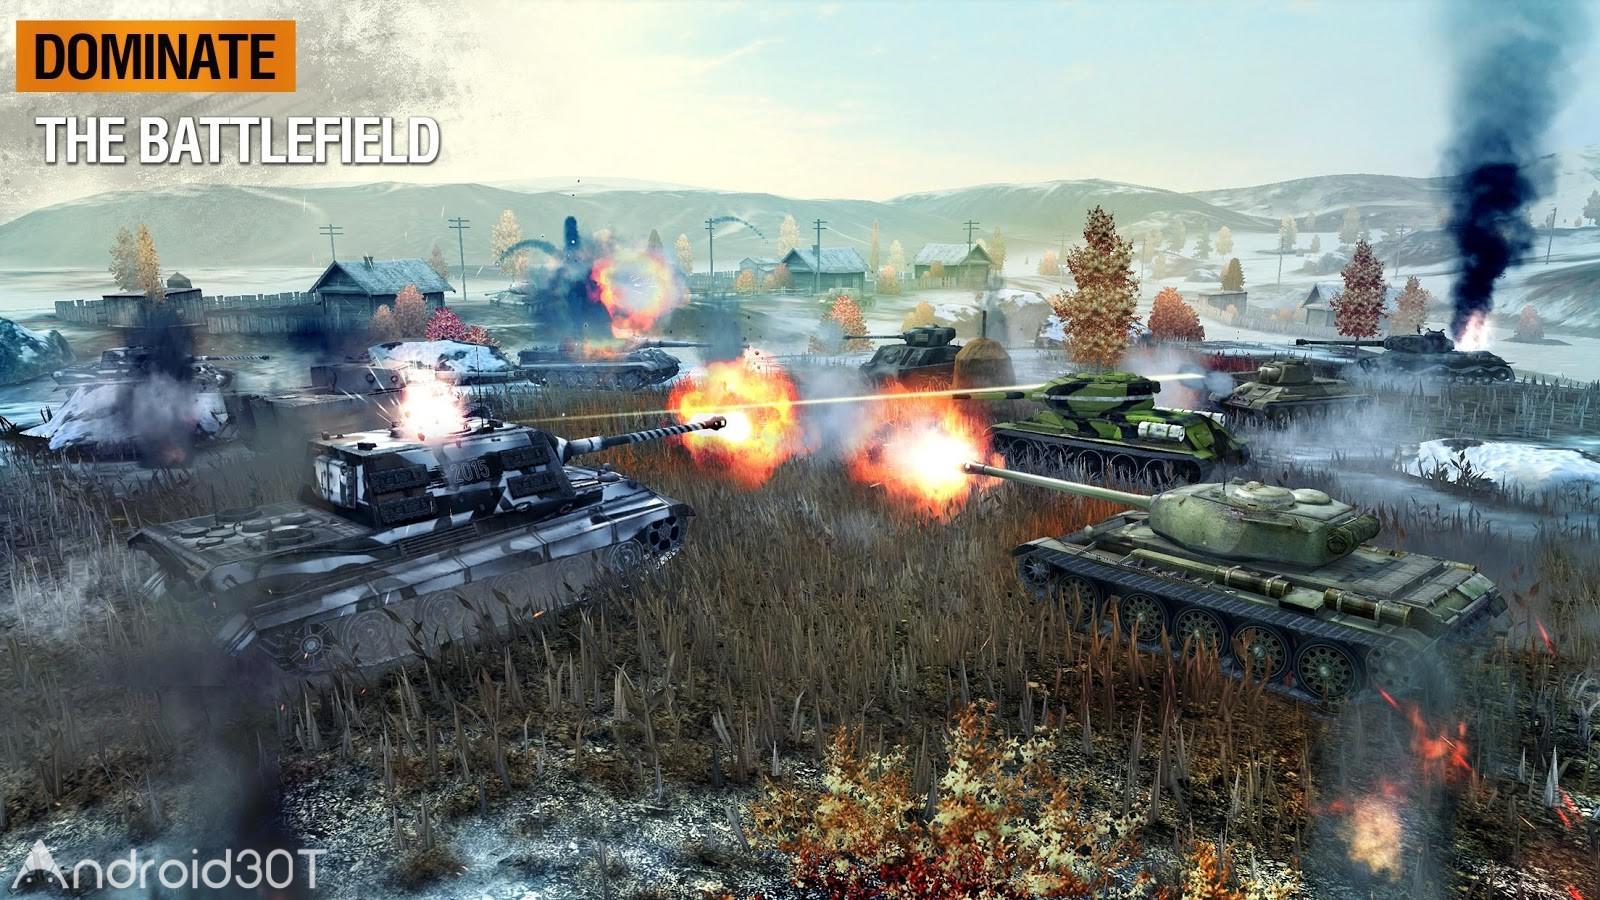 دانلود World of Tanks Blitz 8.7.0.682 – دانلود بازی جهان نبرد تانک ها اندروید